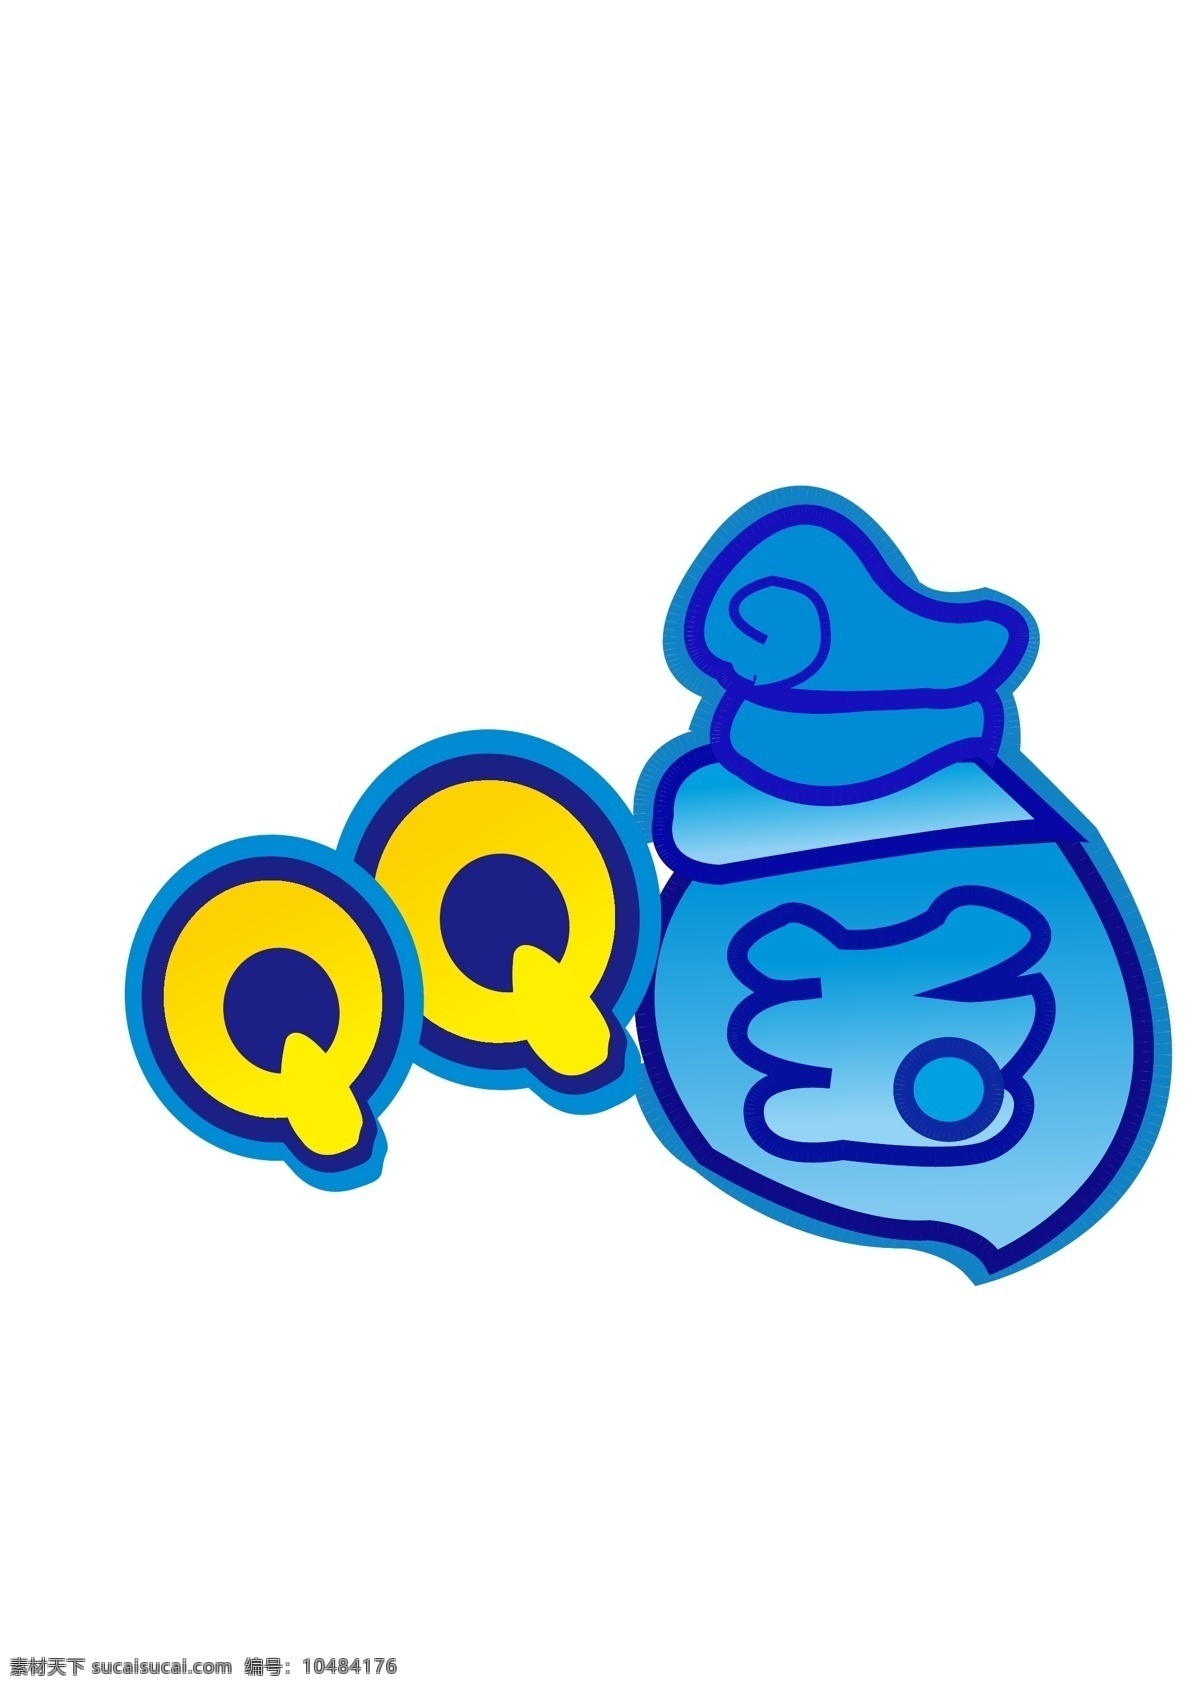 qq 三国游戏 标志设计 标志 游戏 ui设计 游戏ui设计